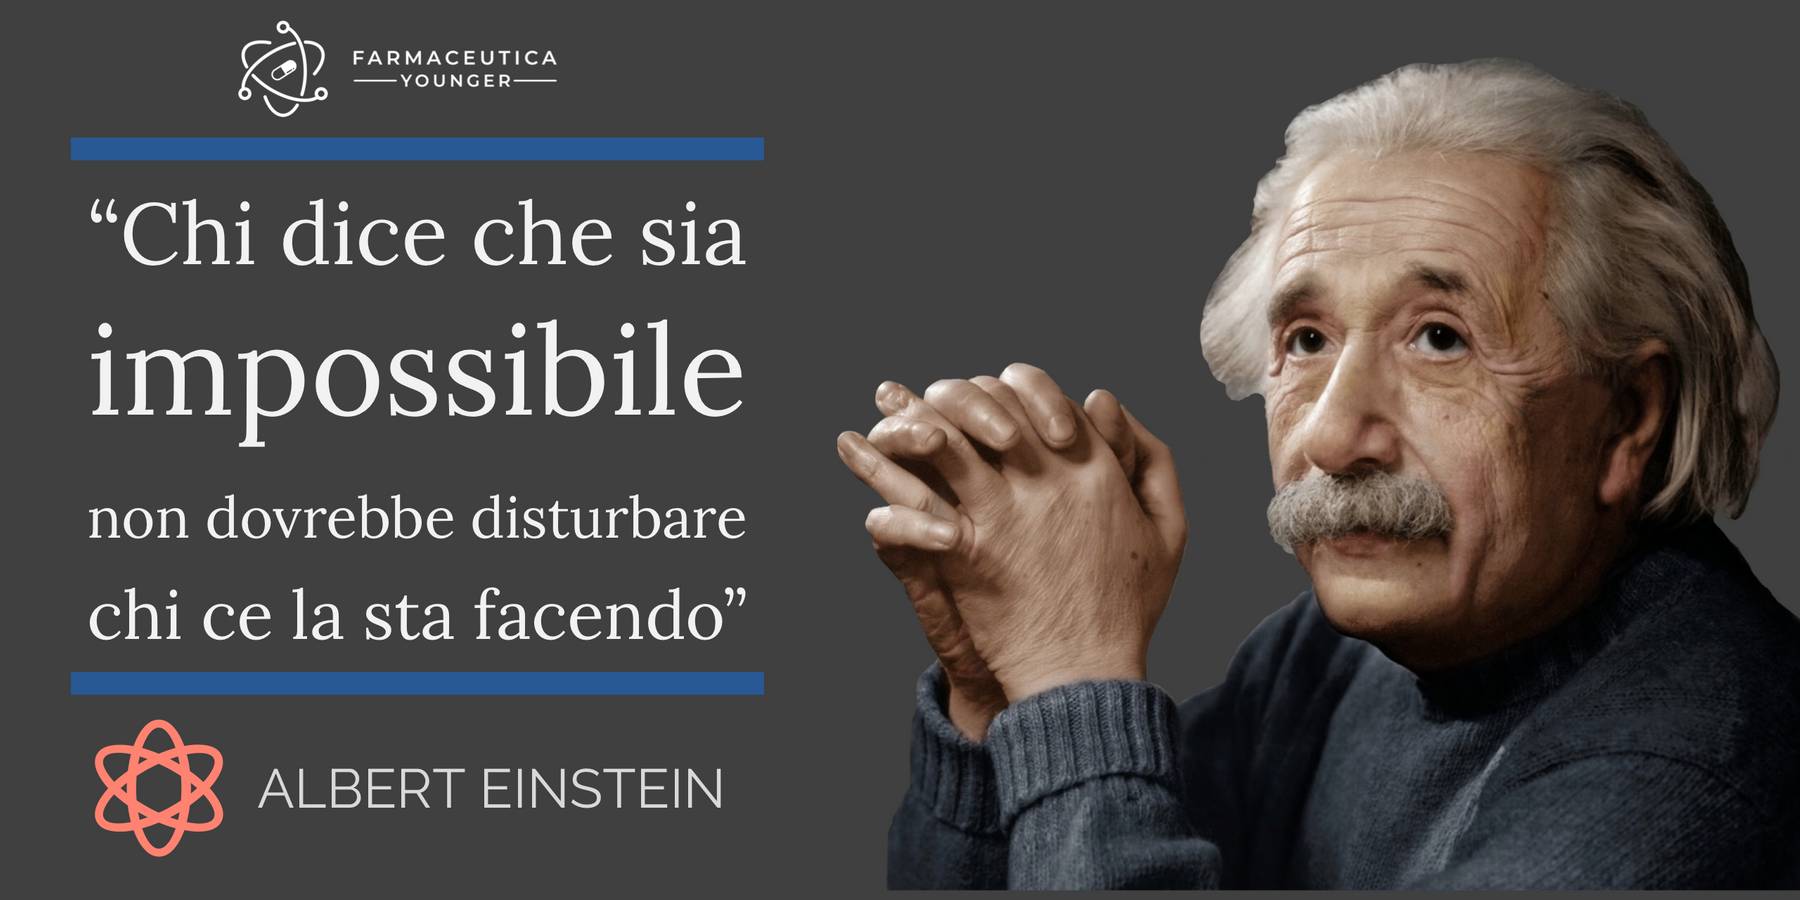 ALBERT EINSTEIN - "Chi dice che sia impossibile non dovrebbe disturbare chi ce la sta facendo"